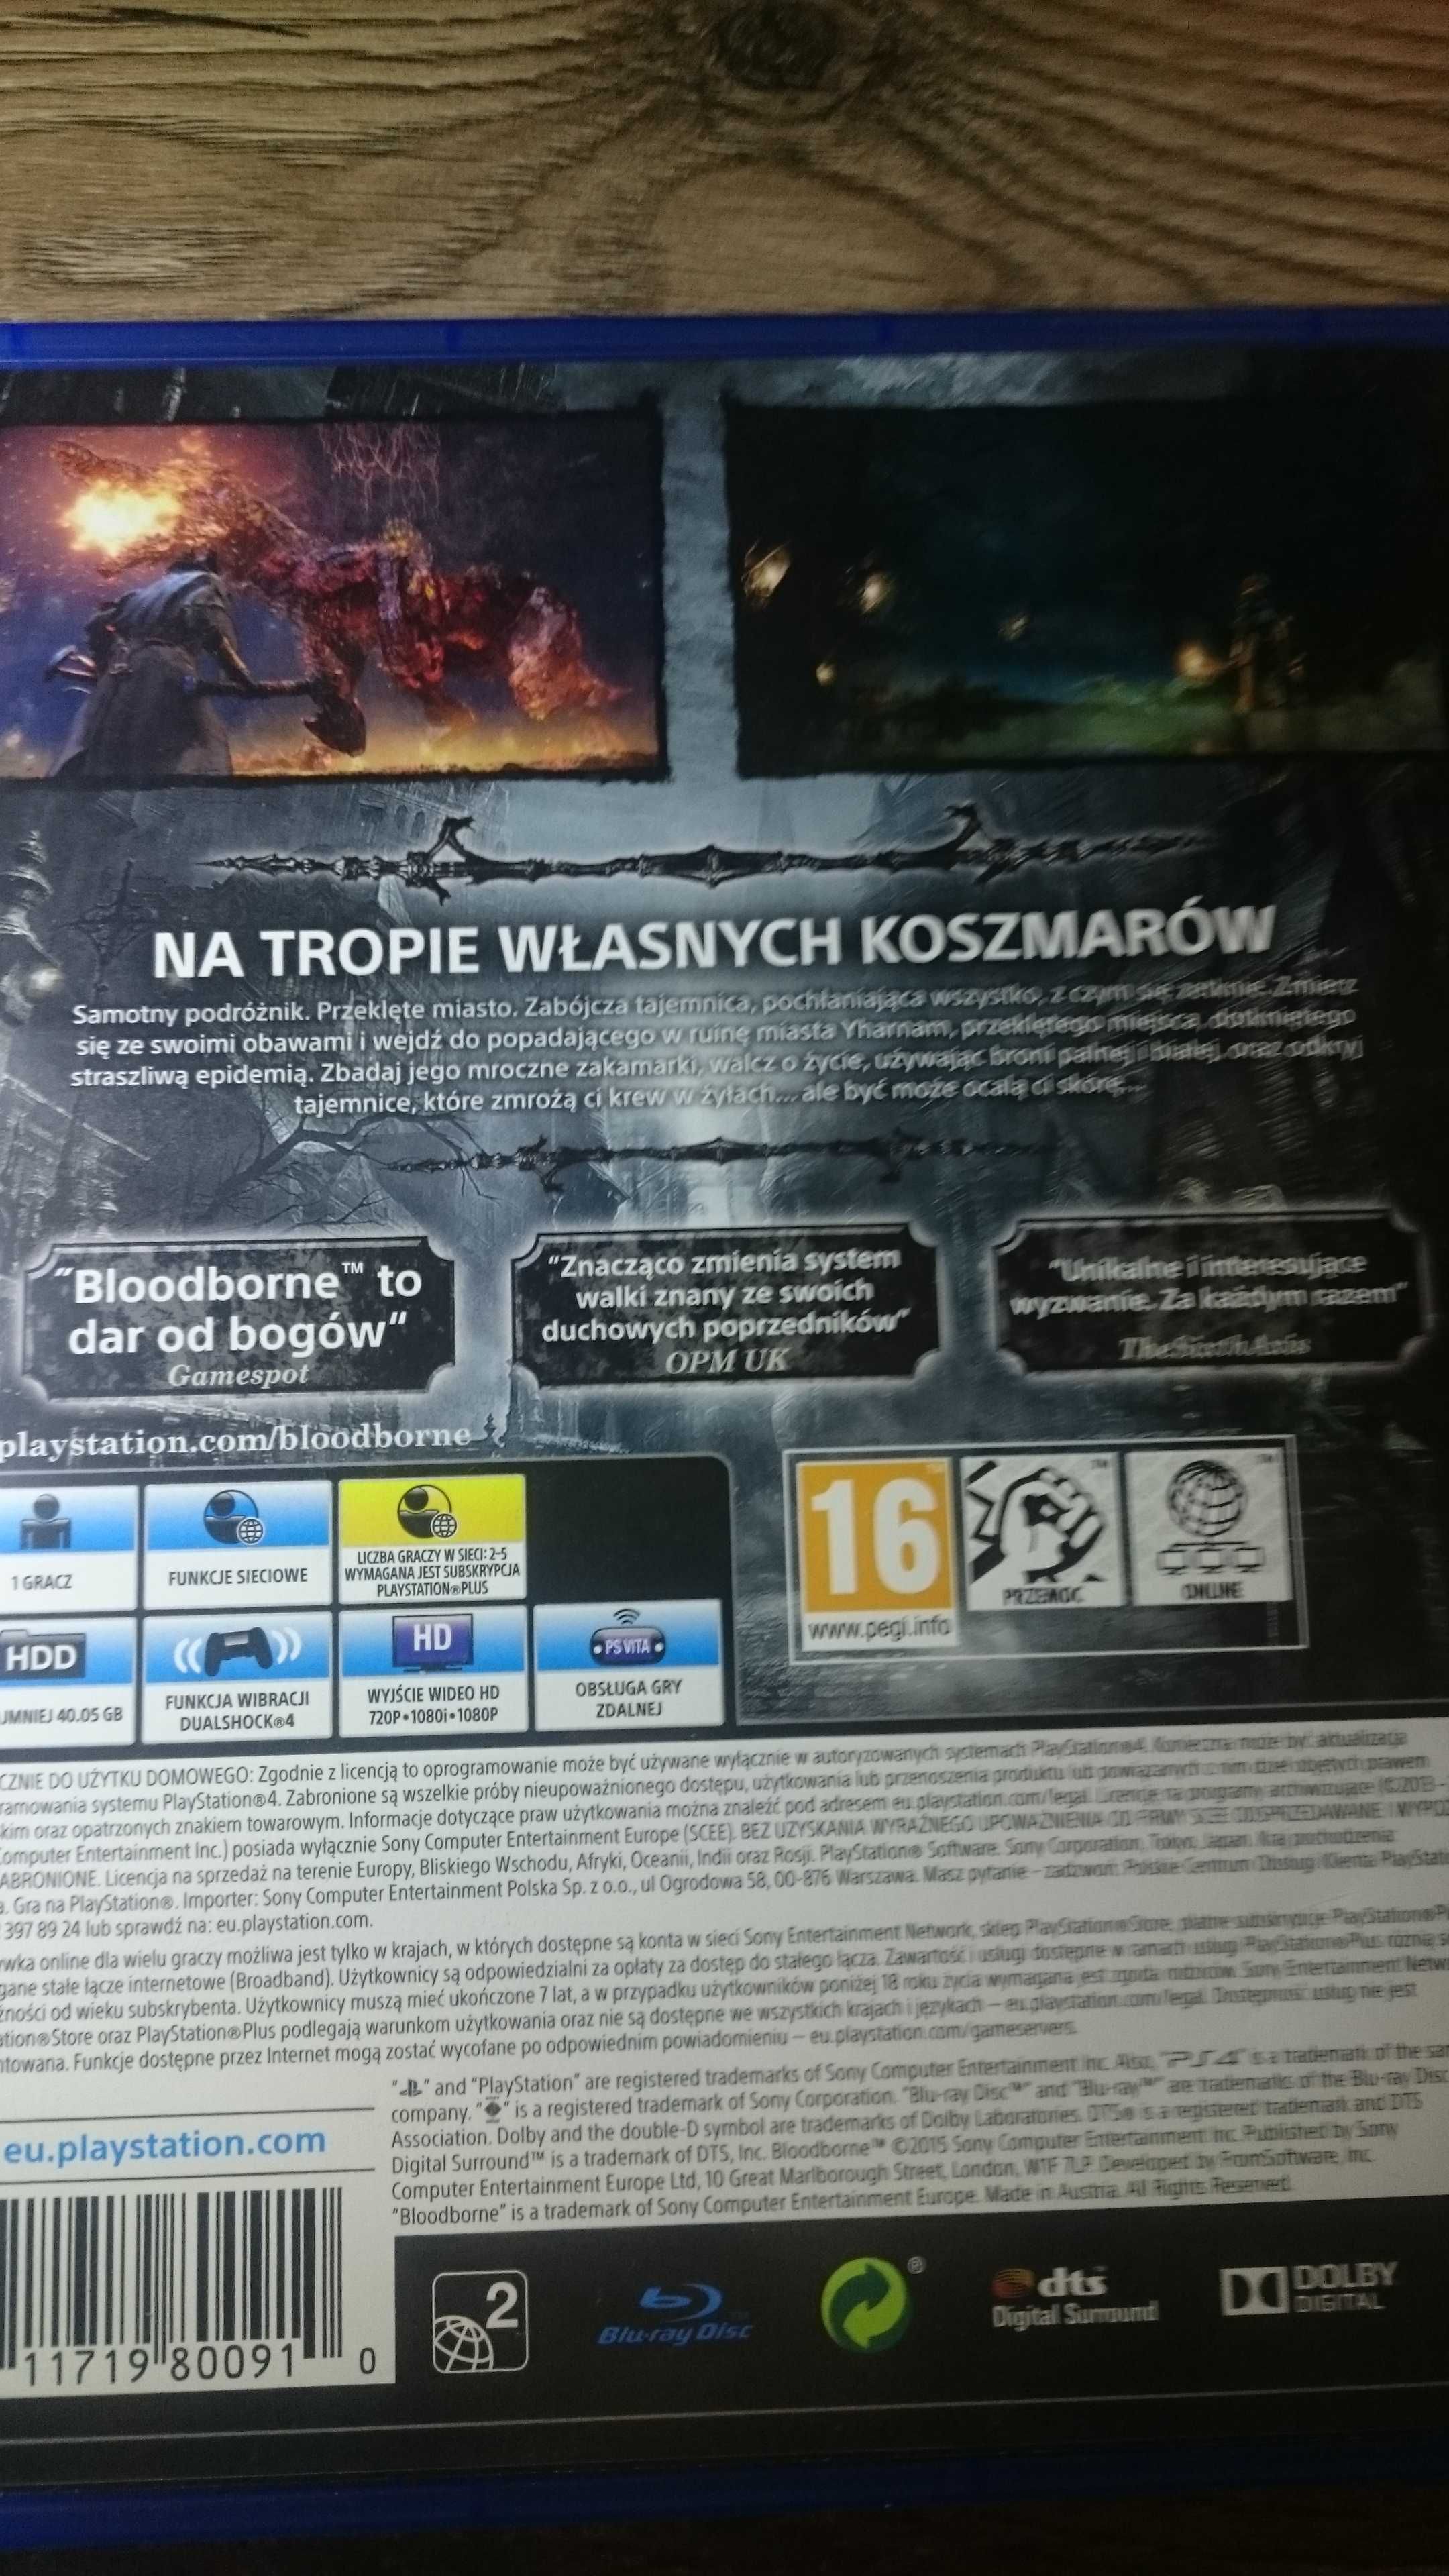 BLOODBORNE PS4 Playstation 4 Ideał polska  dark souls dying days gone